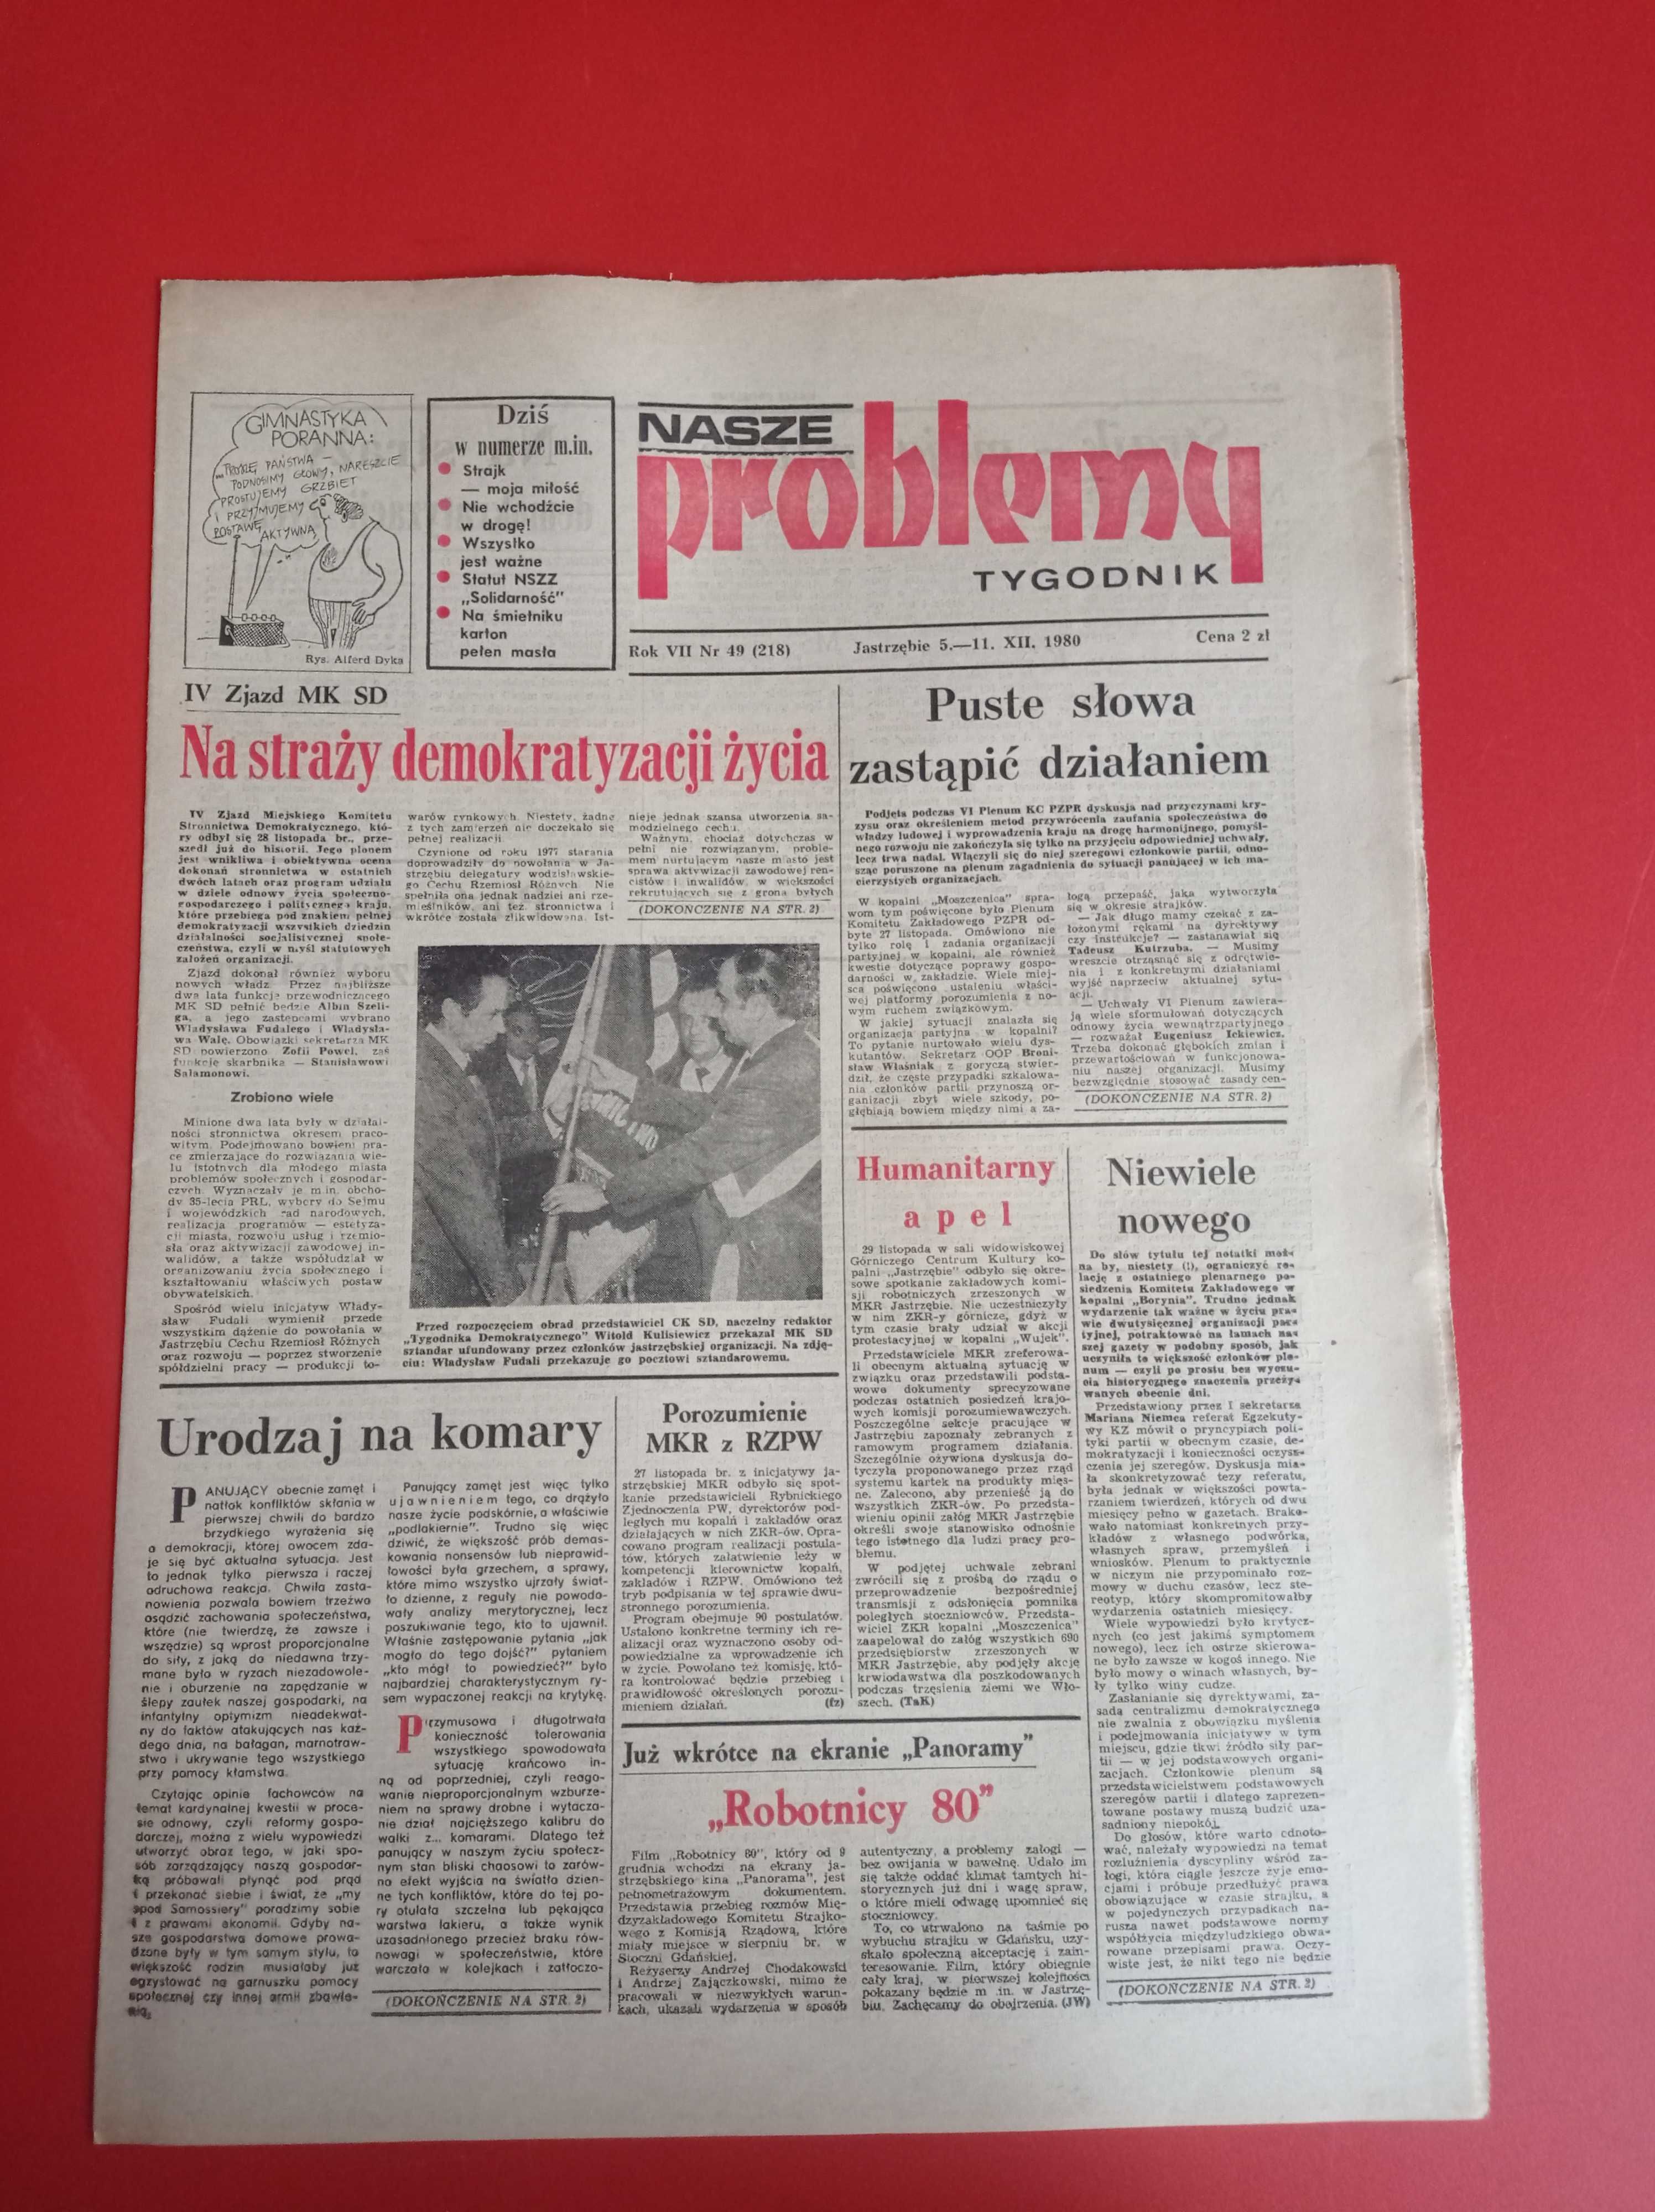 Nasze problemy, Jastrzębie, nr 49, 5-11 grudnia 1980